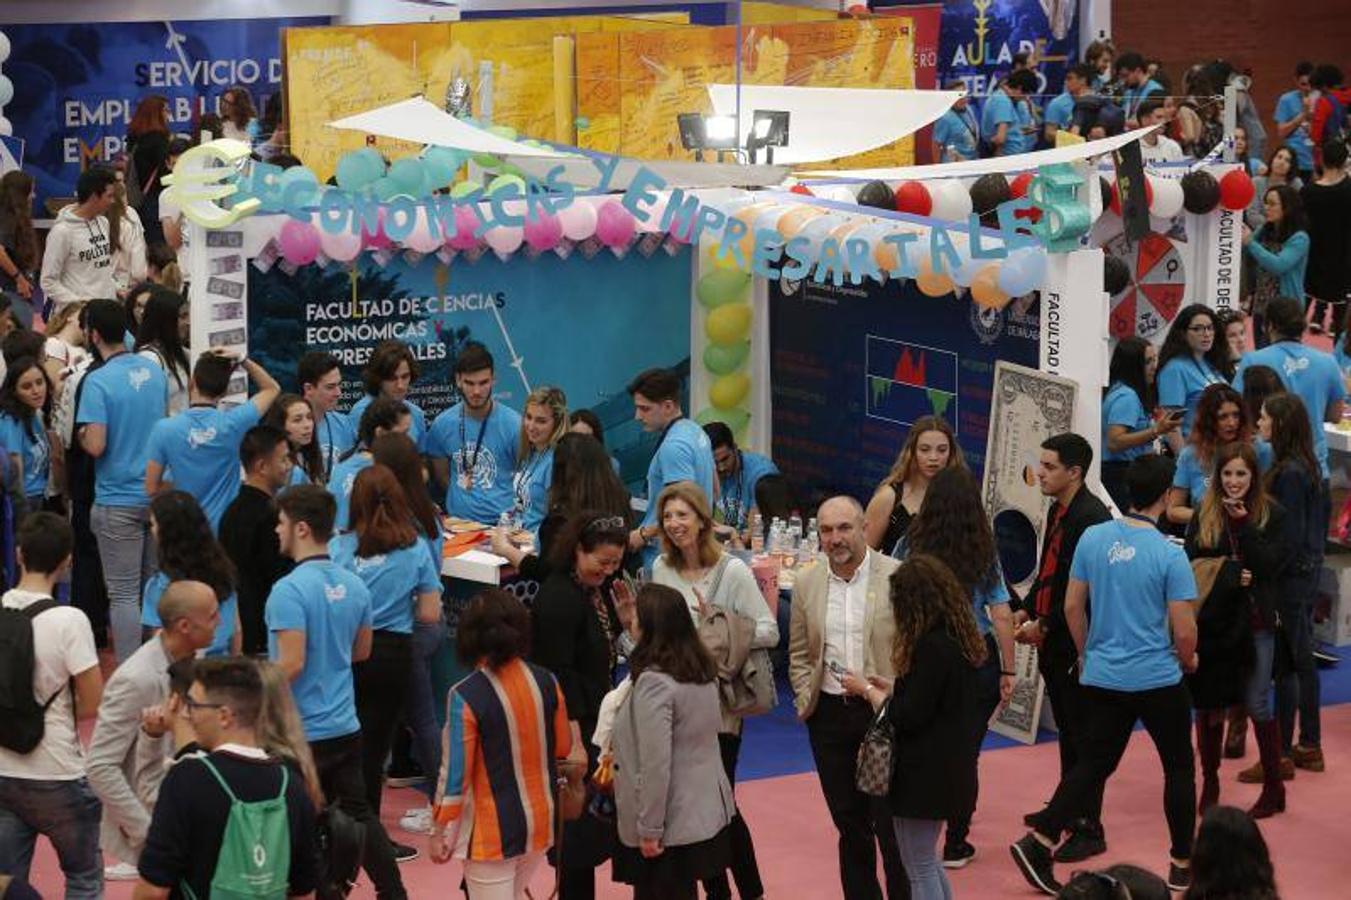 La Universidad de Málaga celebra su jornada de puertas abiertas para mostrar a los estudiantes su oferta académica, social, cultural y deportiva